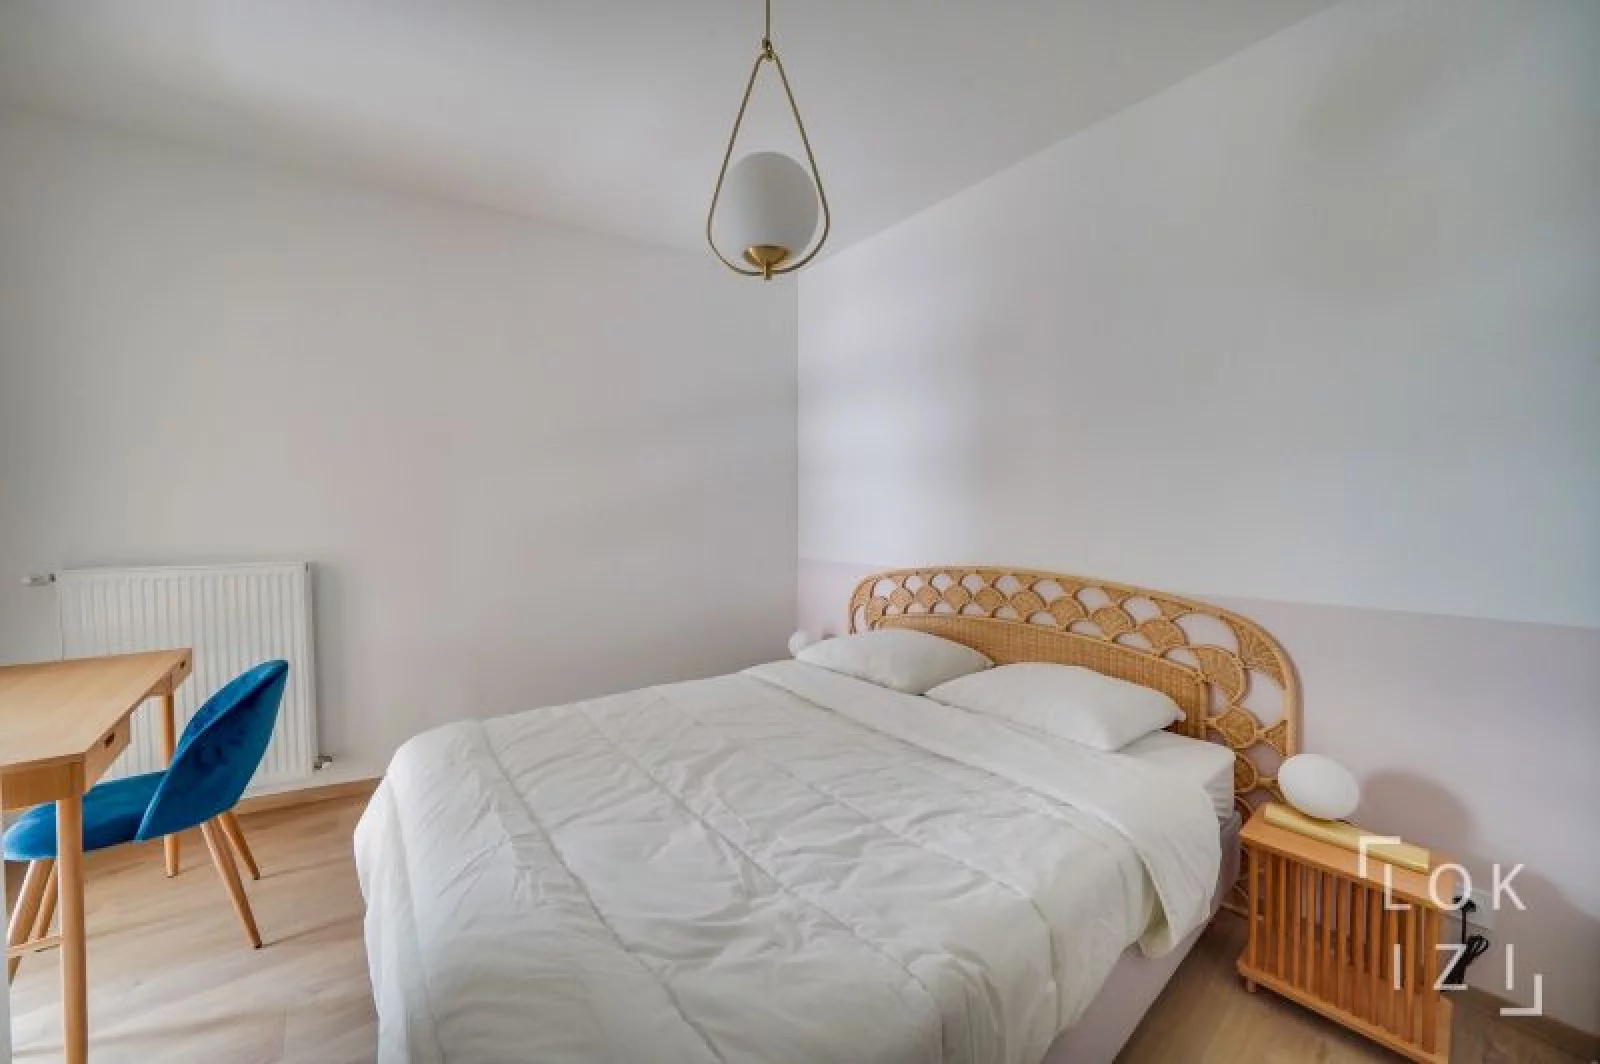 Location appartement meublé 4 pièces 80m² (Bordeaux - Belcier / Gare St Jean)